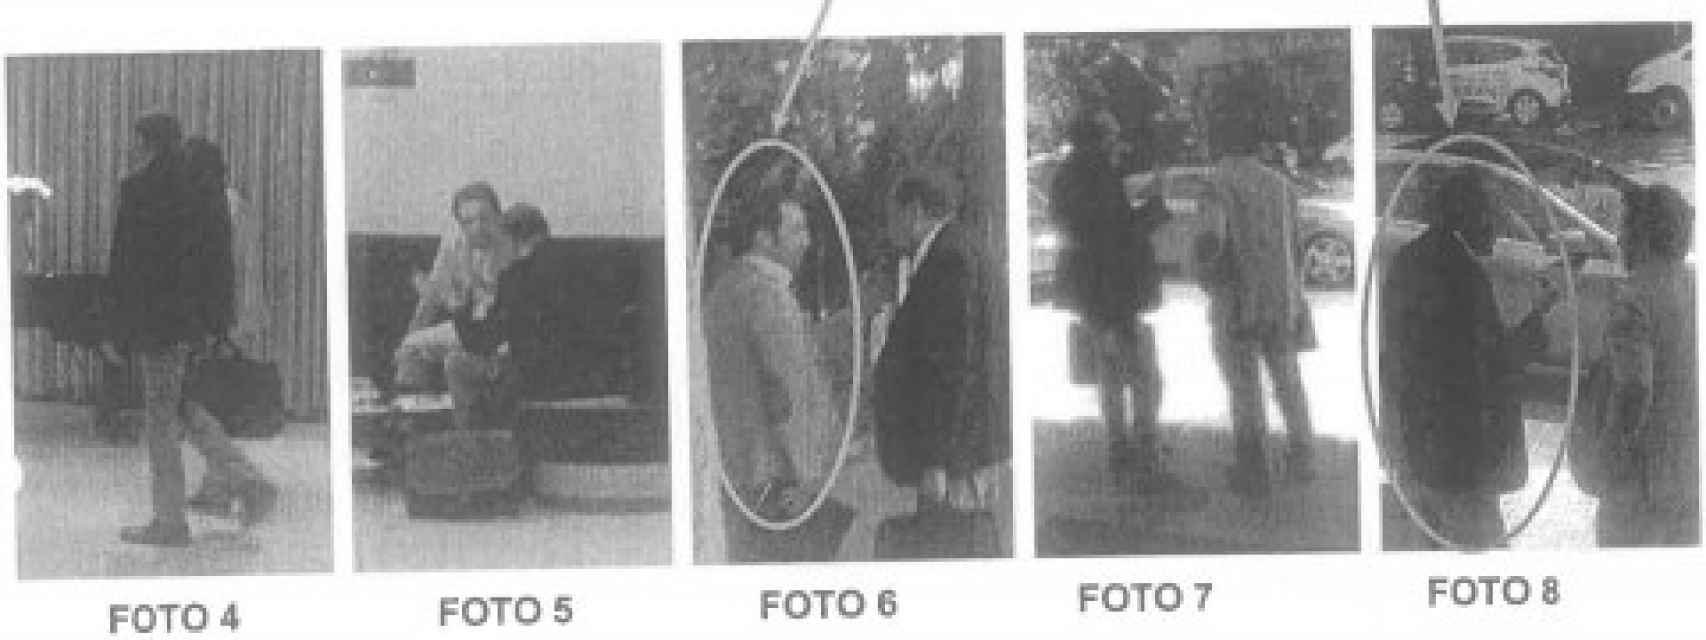 Imágenes de los abogados en los informes policiales.